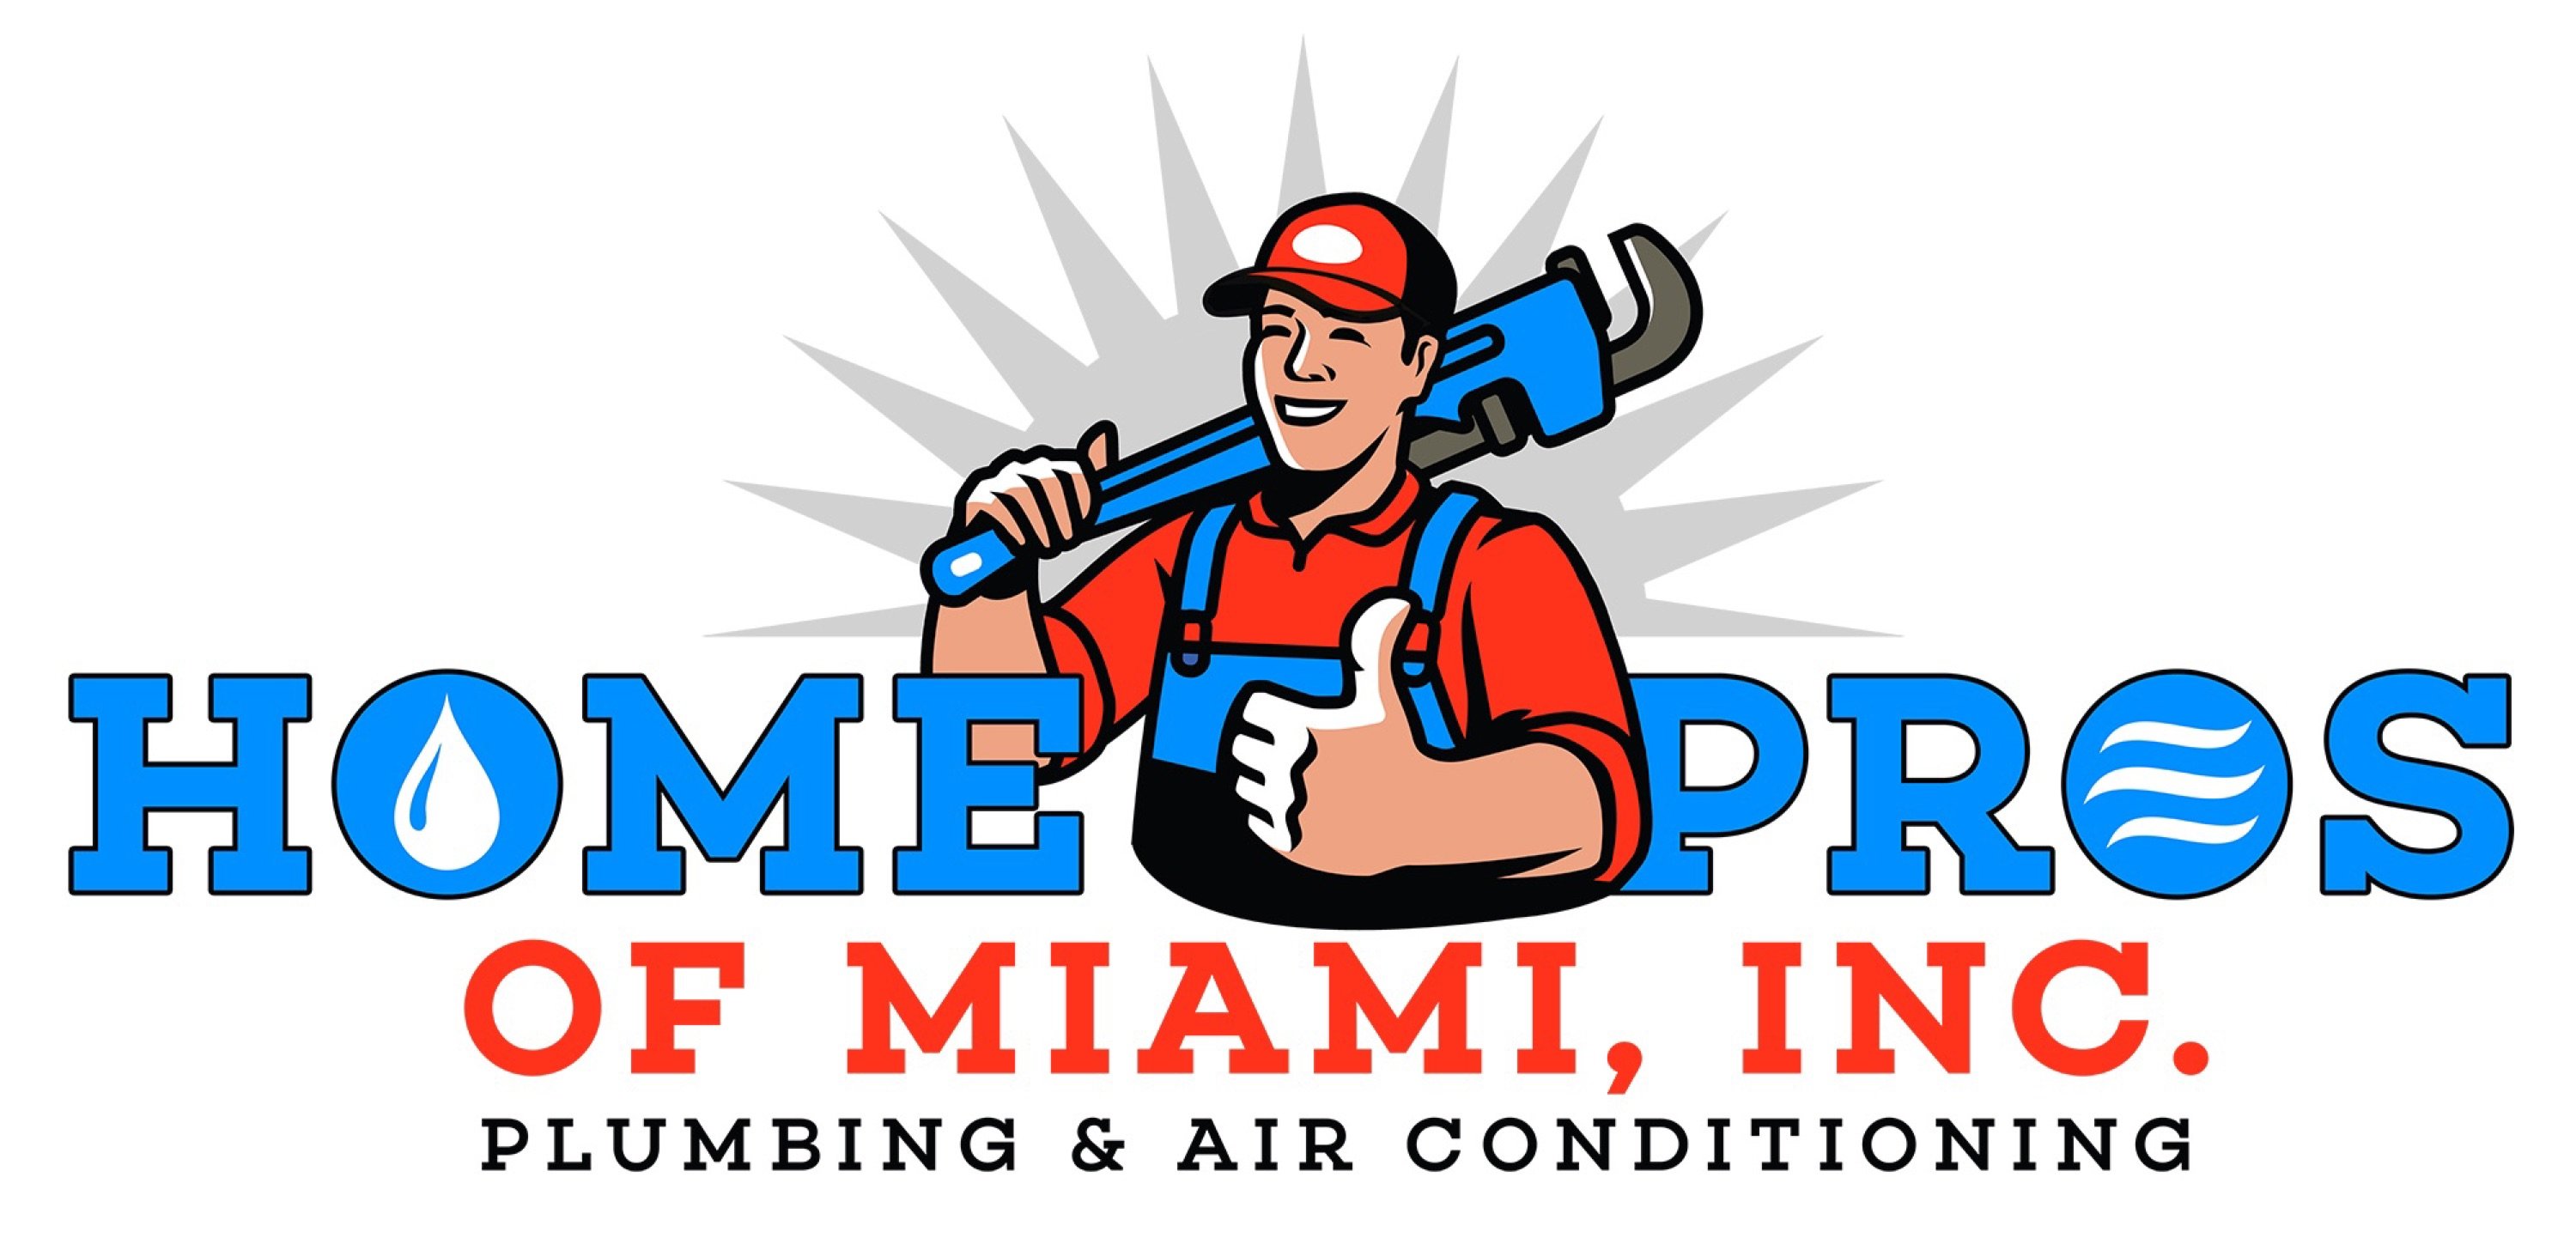 Home Pros of Miami, Inc. Logo